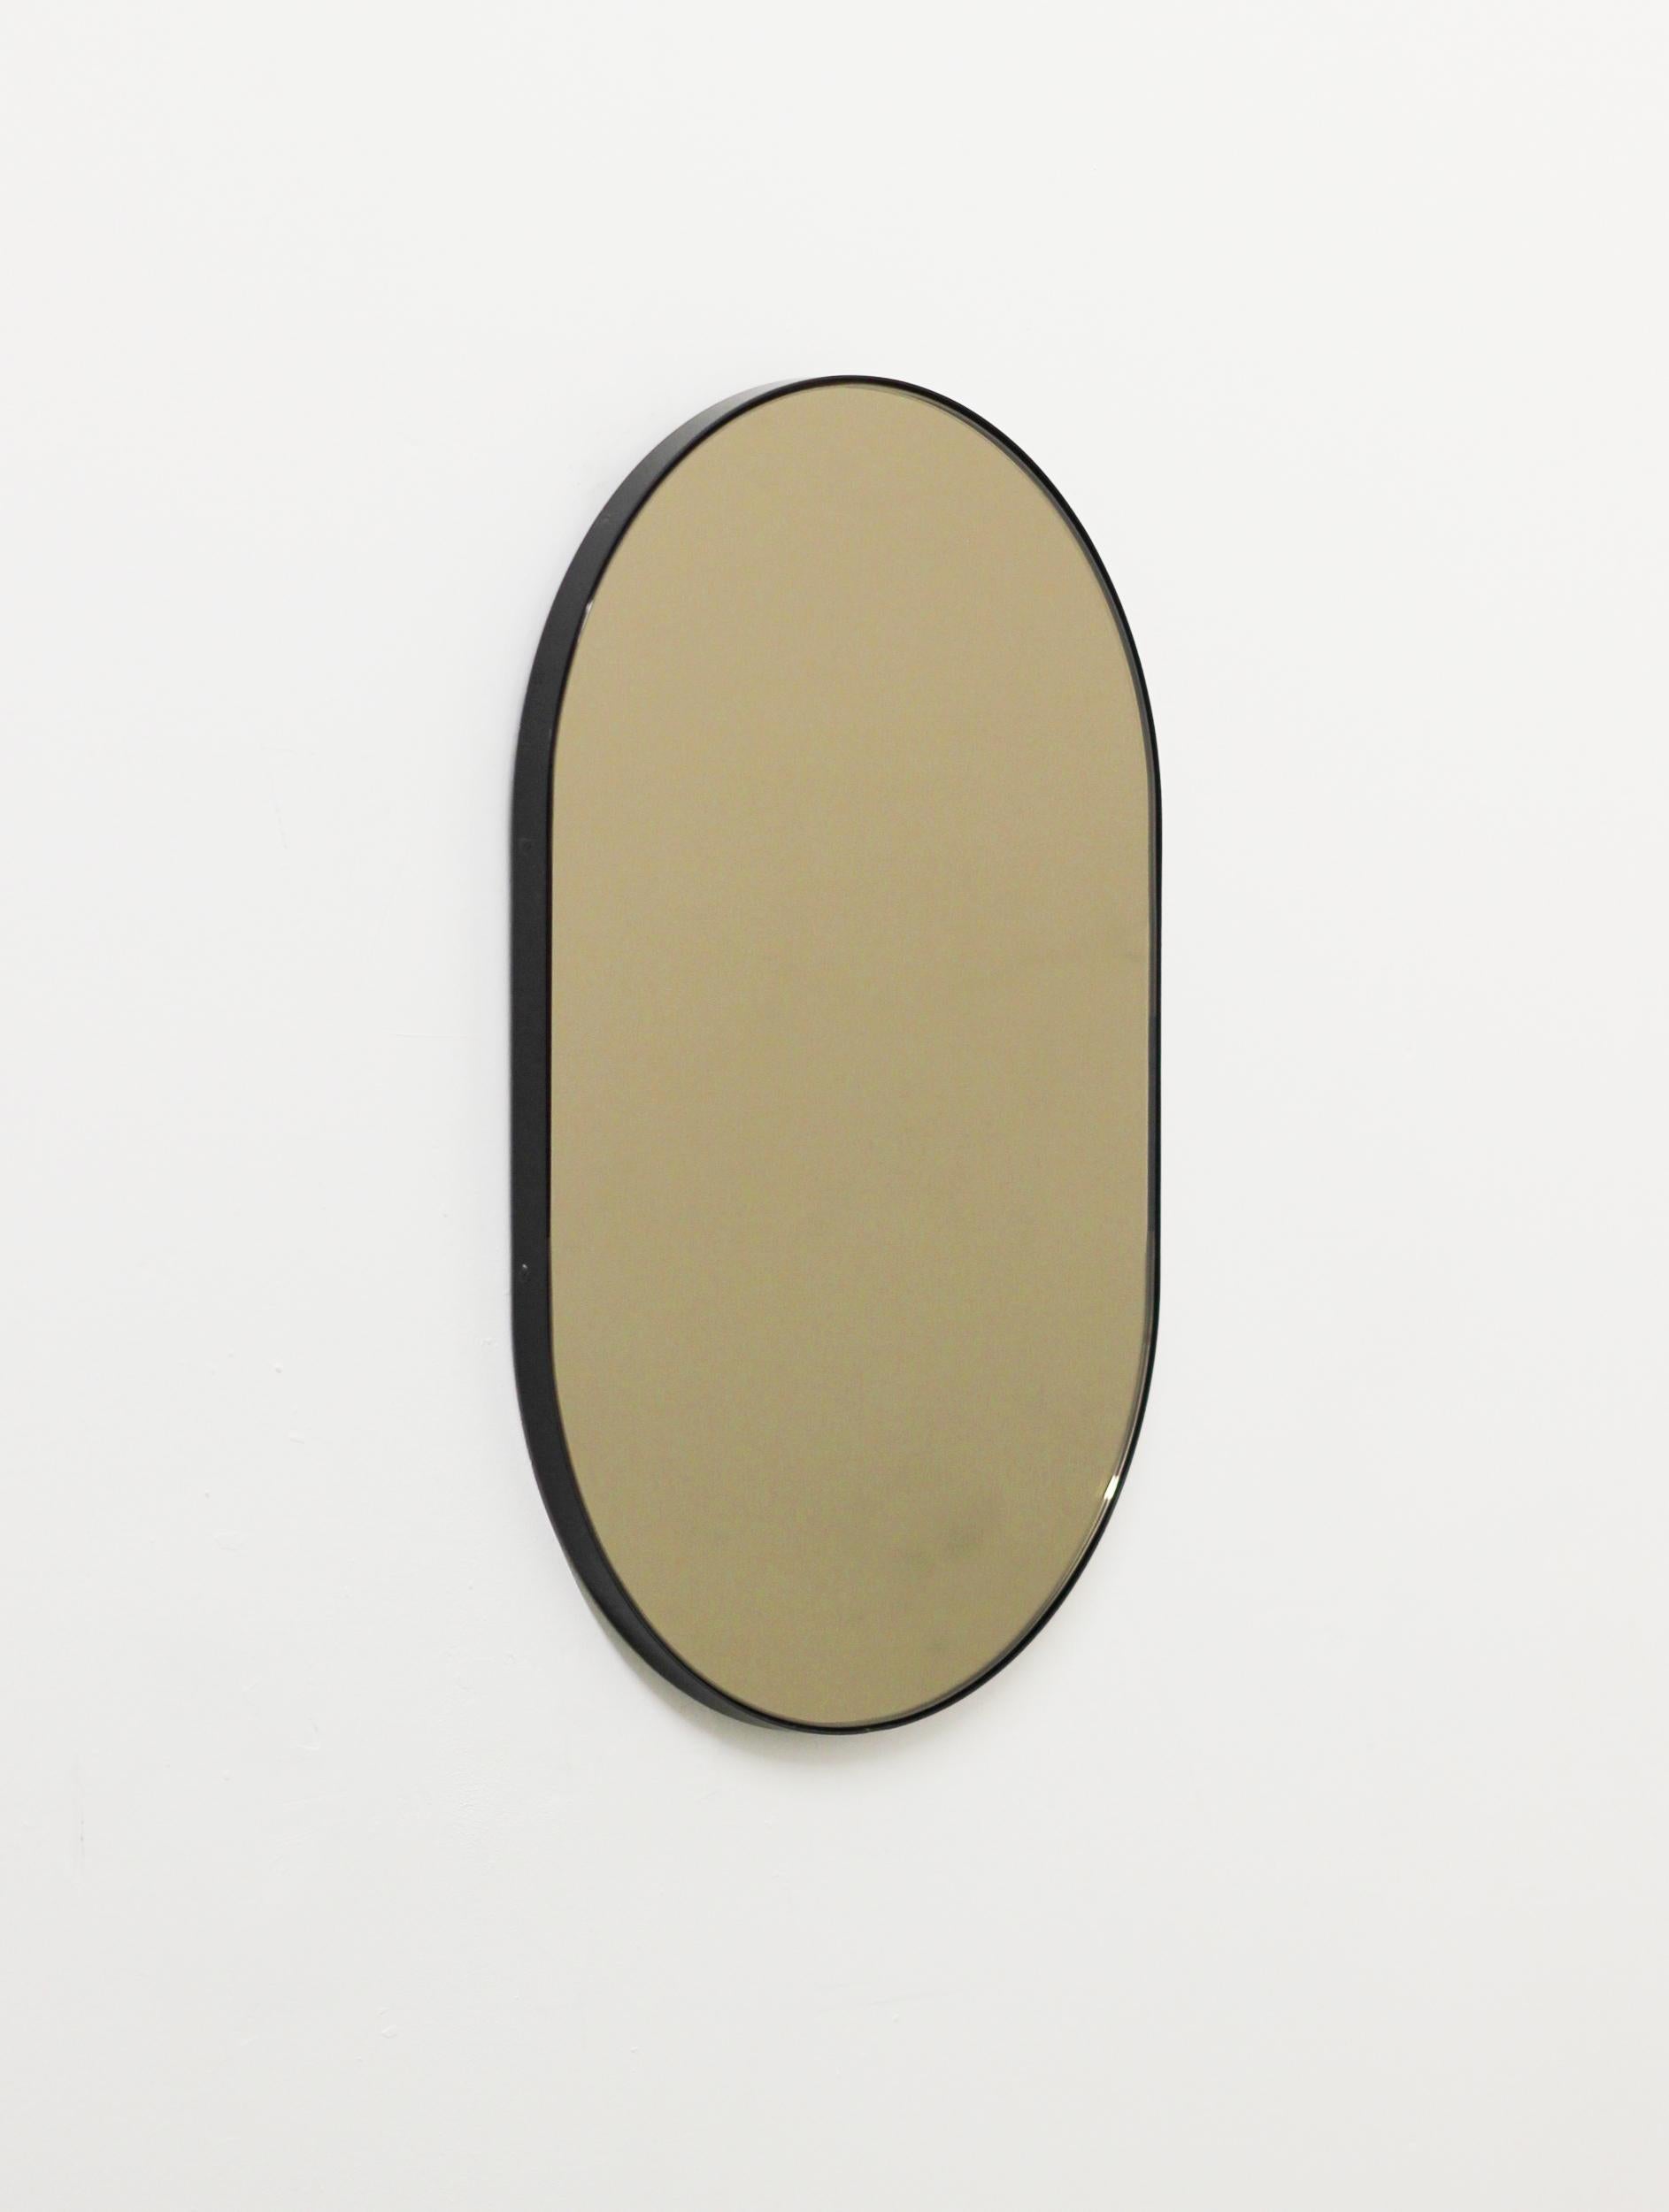 Moderner, handgefertigter, kapselförmiger, bronzefarben getönter Spiegel mit einem eleganten, schwarz pulverbeschichteten Aluminiumrahmen. Entworfen und handgefertigt in London, UK.

Die mittelgroßen, großen und extragroßen Spiegel (37 cm x 56 cm,